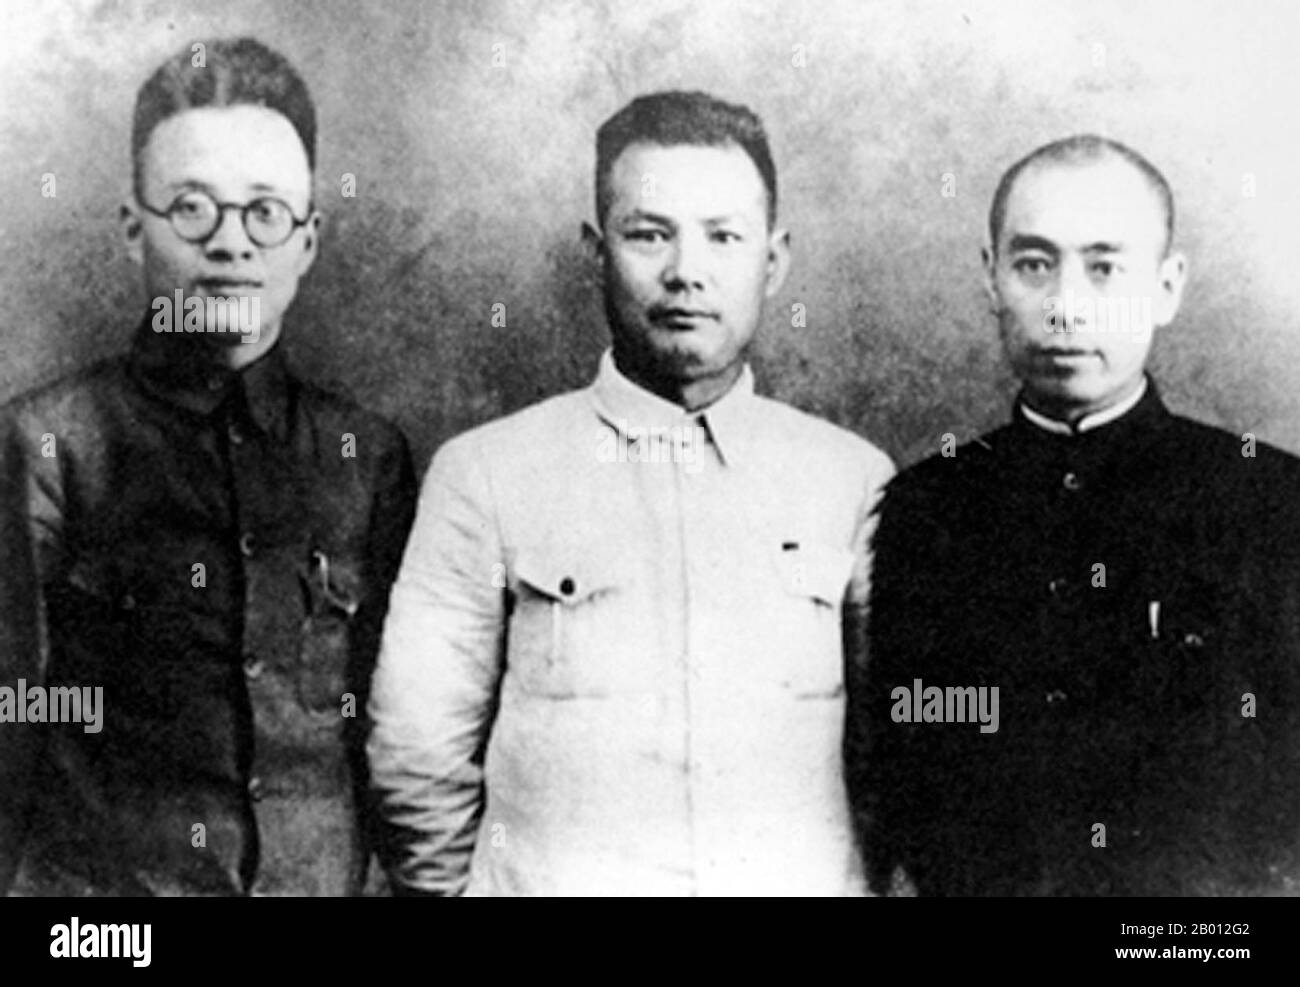 China: Qin Bangxian, Ye Jianying und Zhou Enlai in Xi'an nach dem Vorfall in Xi'an, 1936. Der Xi'an-Vorfall vom 1936. Dezember (xī'an Shibiìan) fand in der Stadt Xi'an während des chinesischen Bürgerkrieges zwischen der regierenden Kuomintang (KMT) und der rebellischen Kommunistischen Partei Chinas und kurz vor dem Zweiten Chinesisch-Japanischen Krieg statt. Am 12. Dezember 1936 wurde Generalissimo Chiang Kai-shek, der Anführer der KMT, plötzlich verhaftet und von Marschall Zhang Xueliang, einem ehemaligen Kriegsherrn der Mandschurei, dem damals von Japan besetzten Mandschukuo, entführt. Der Vorfall führte die Nationalisten und die Kommunisten dazu, sich gegen Japan zu vereinen. Stockfoto